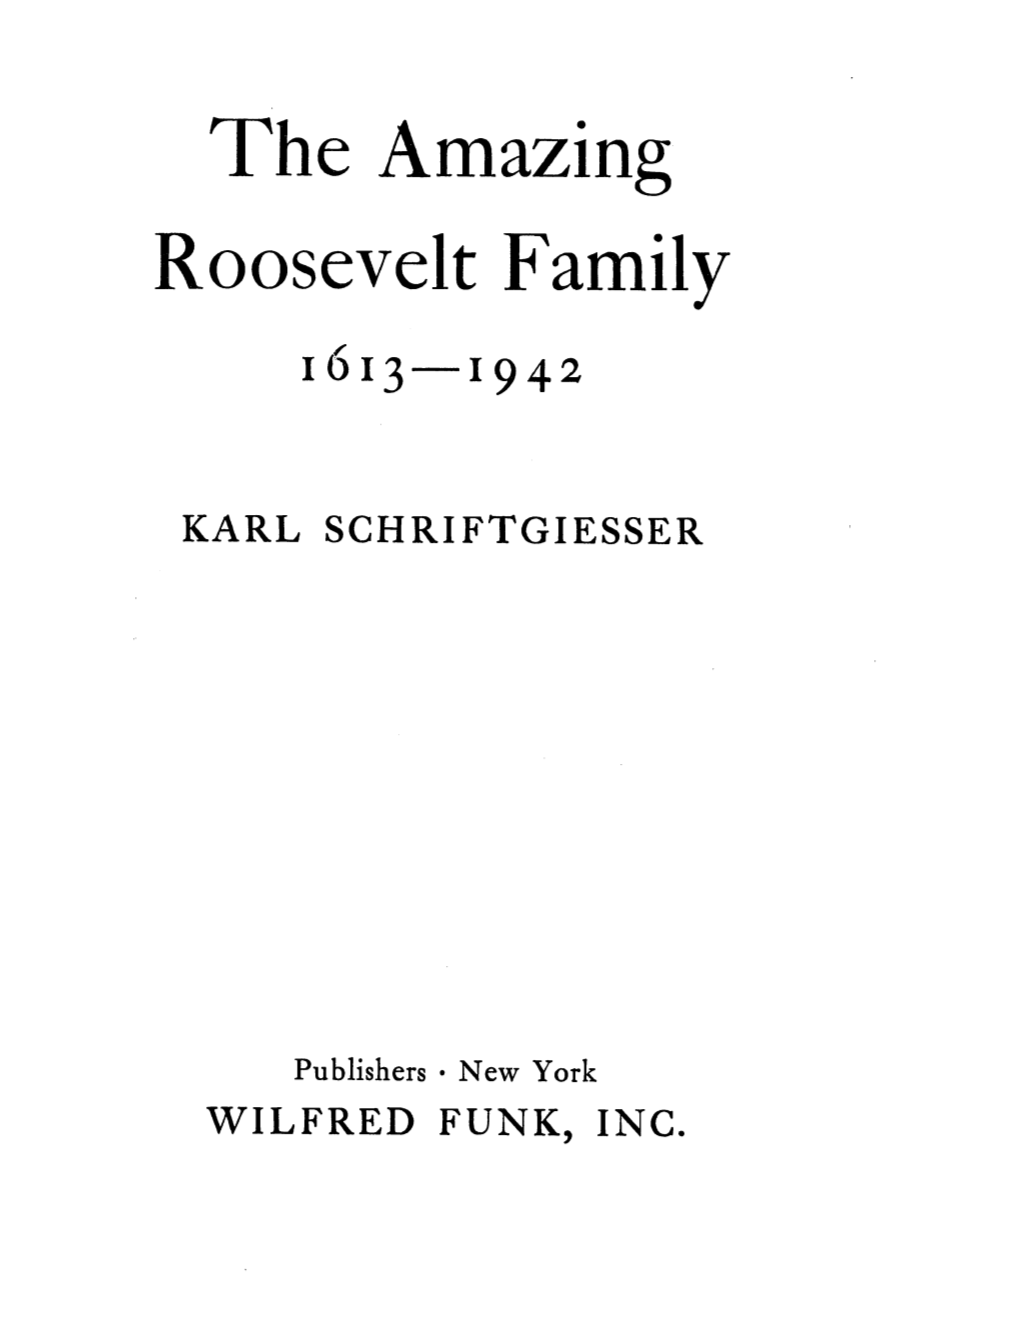 The Amazing Roosevelt Family